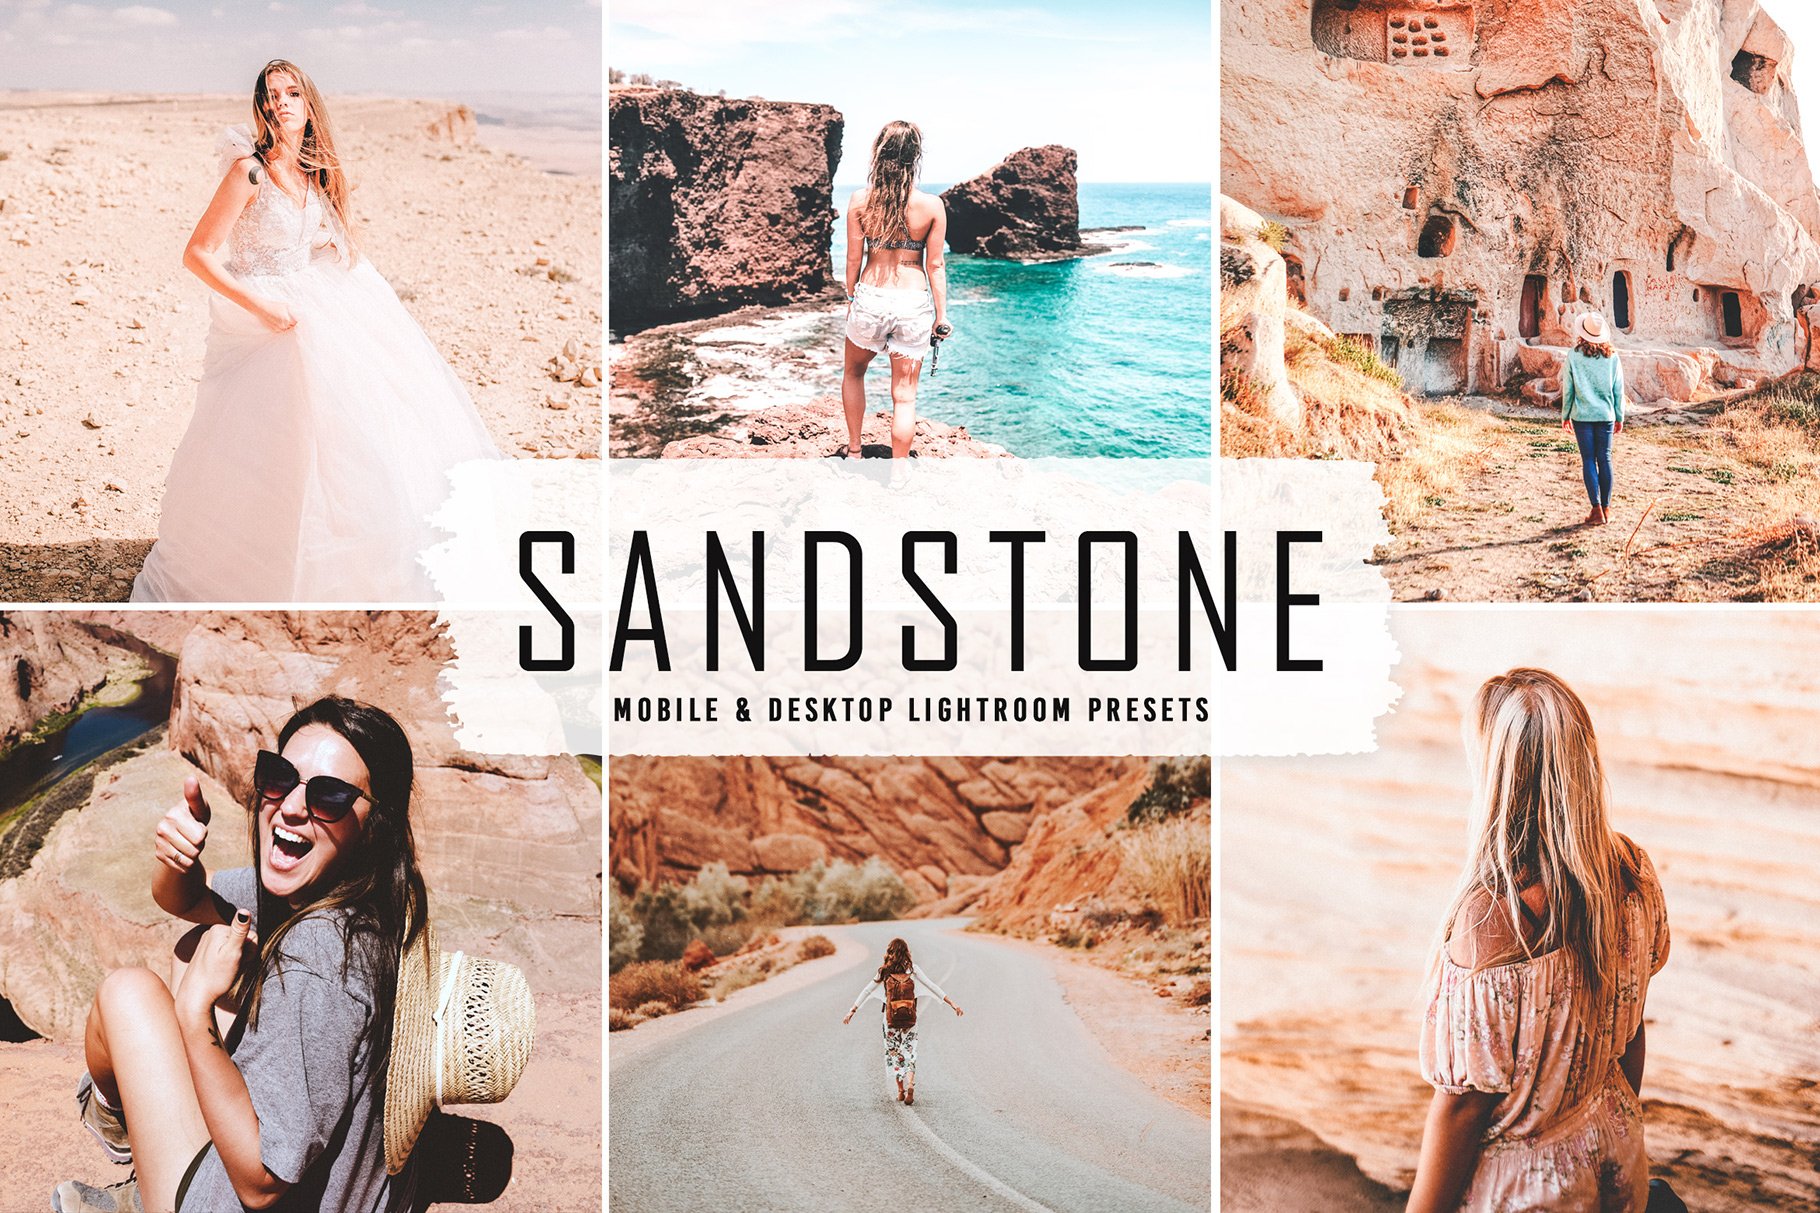 Sandstone Pro Lightroom Presetscover image.